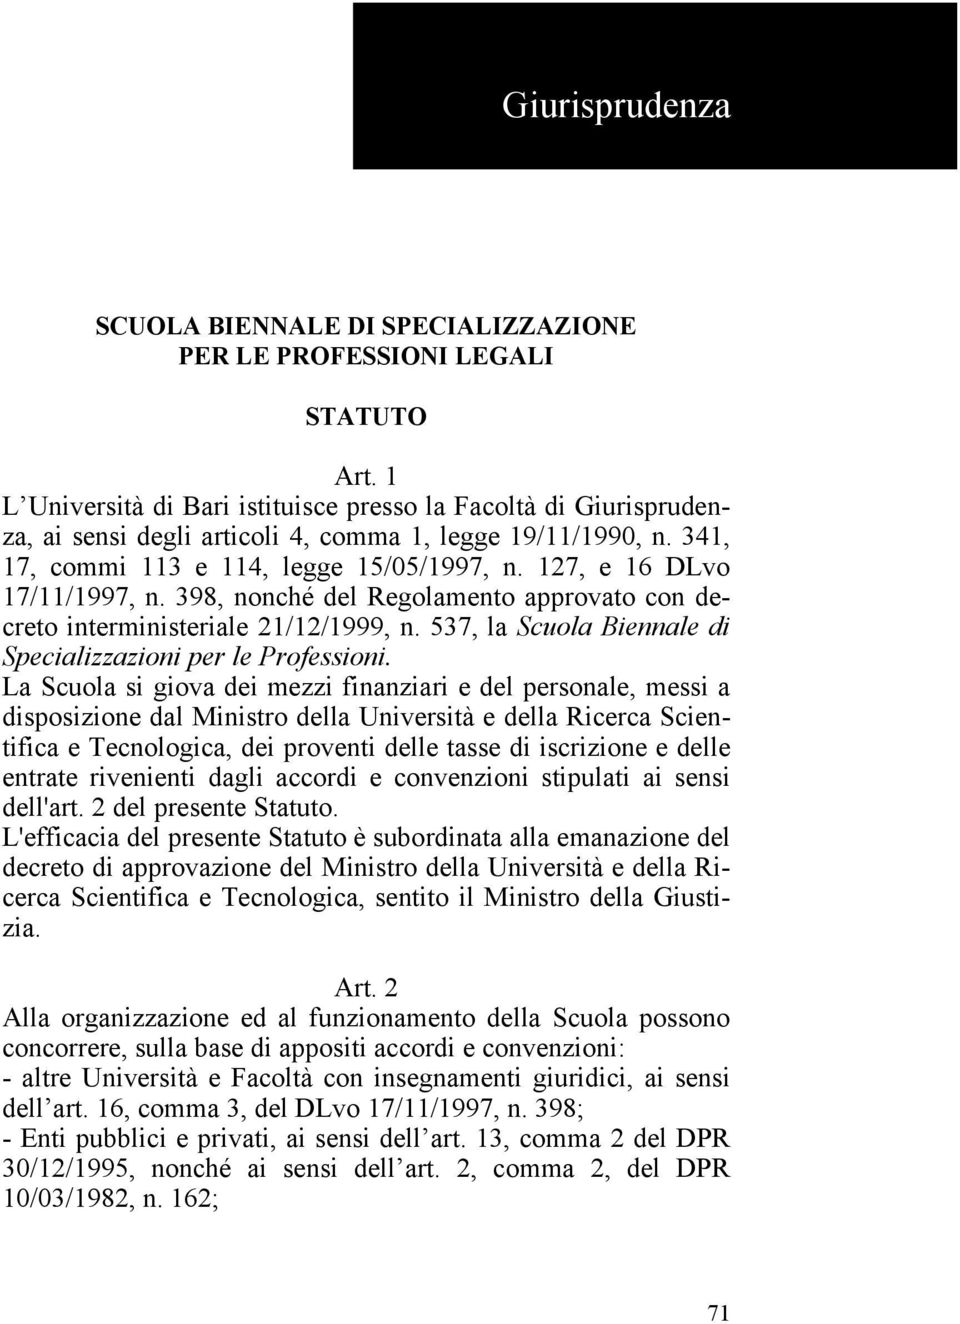 127, e 16 DLvo 17/11/1997, n. 398, nonché del Regolamento approvato con decreto interministeriale 21/12/1999, n. 537, la Scuola Biennale di Specializzazioni per le Professioni.